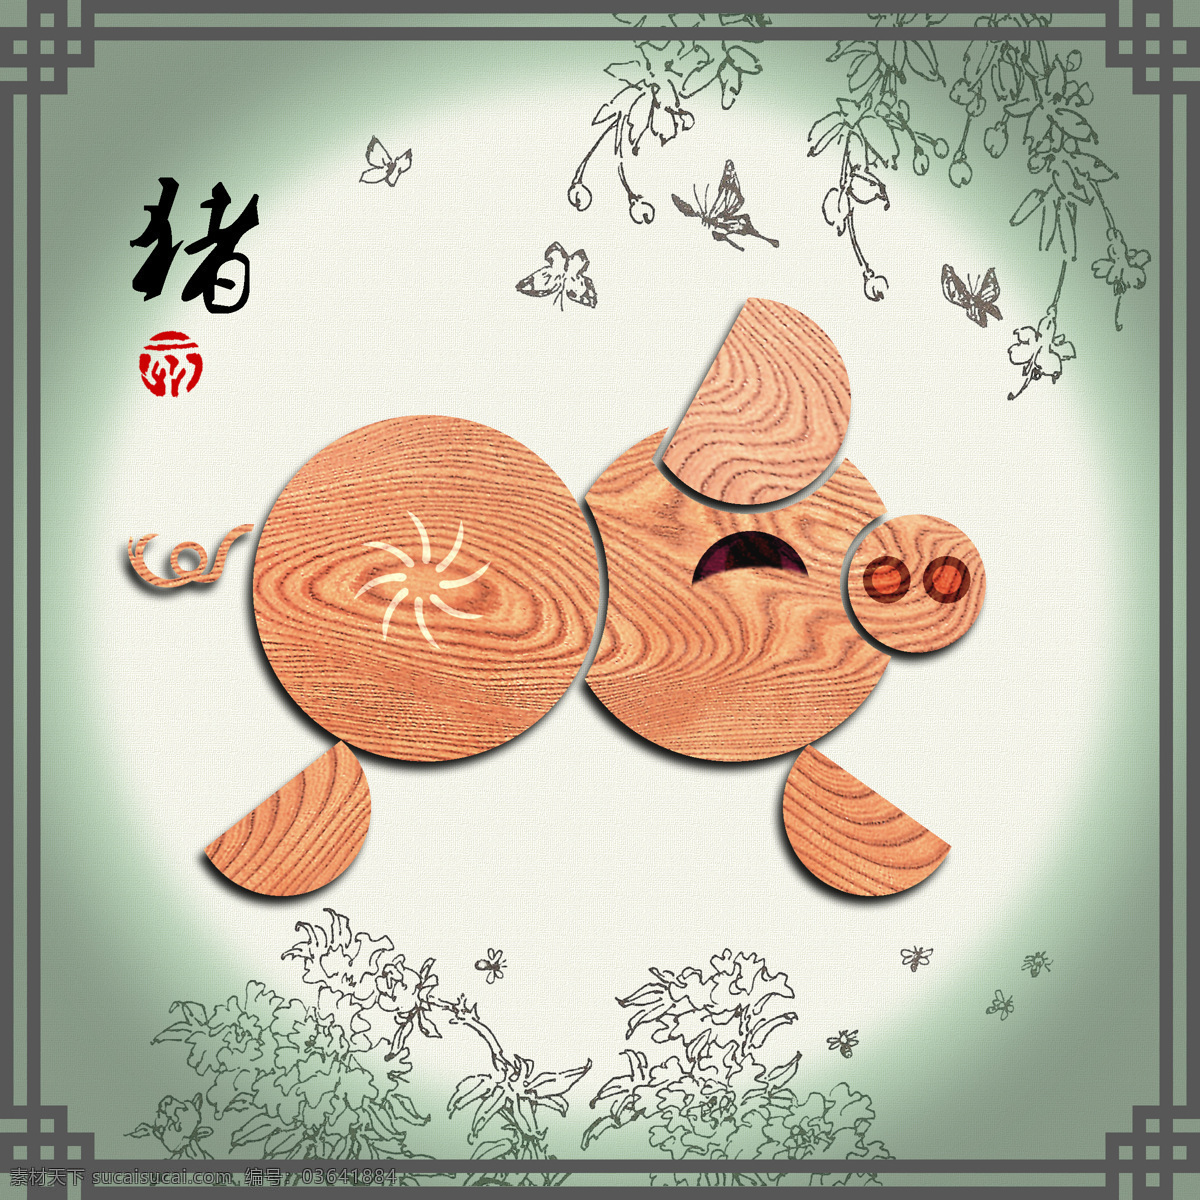 十二生肖 猪 设计图 传统文化 中国元素 天干 地支 木纹 装饰画 高清 特色设计 文化艺术